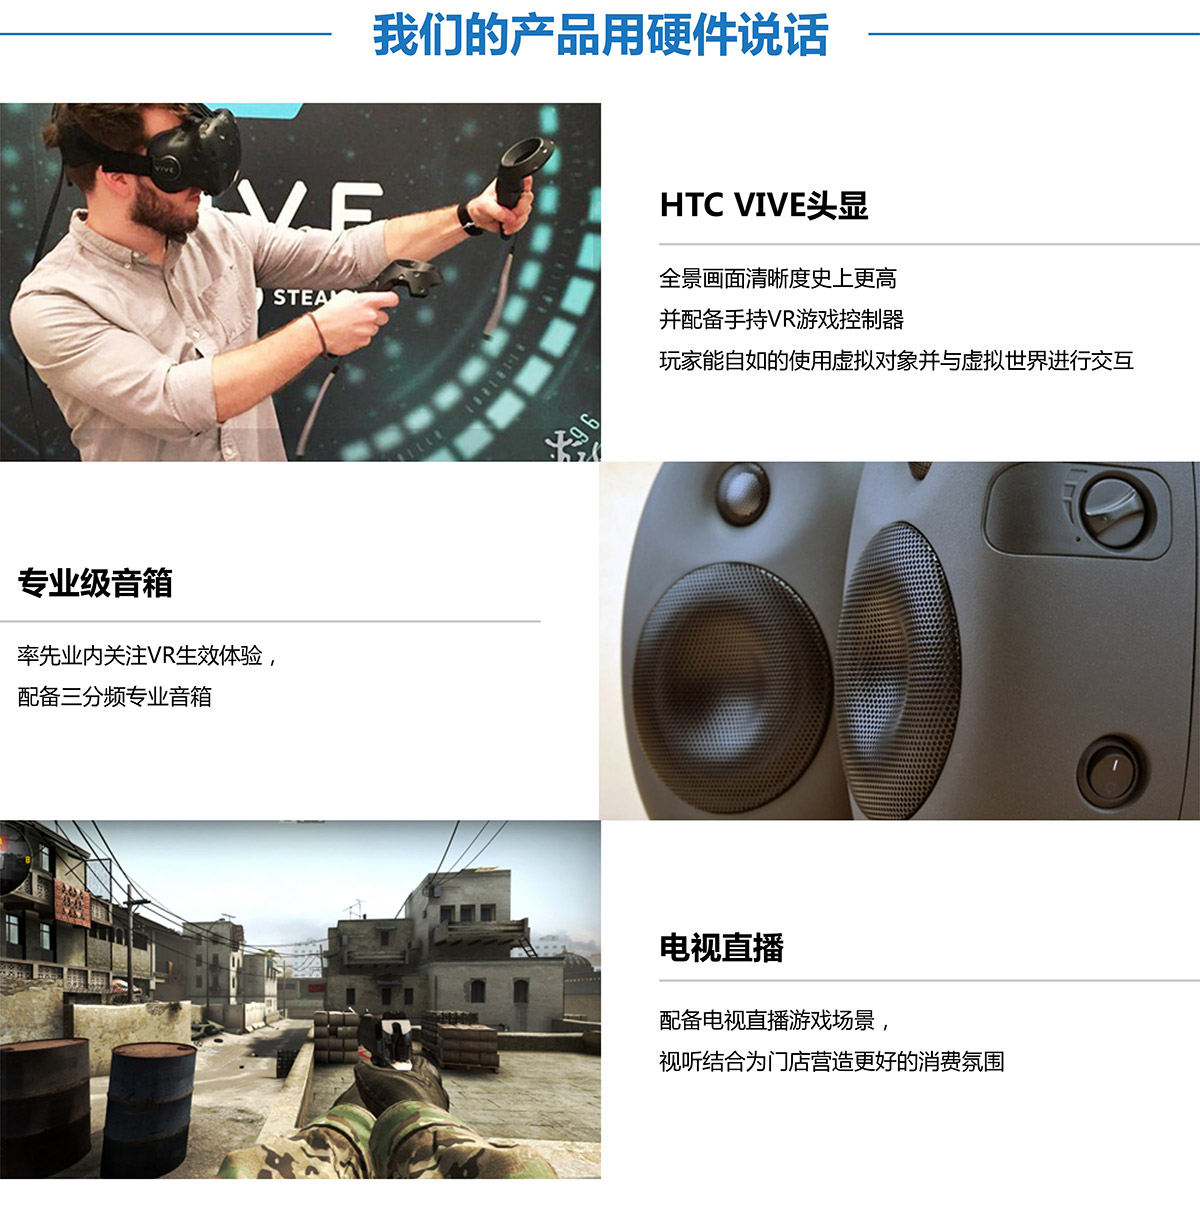 公共安全VR探索用硬件说话.jpg